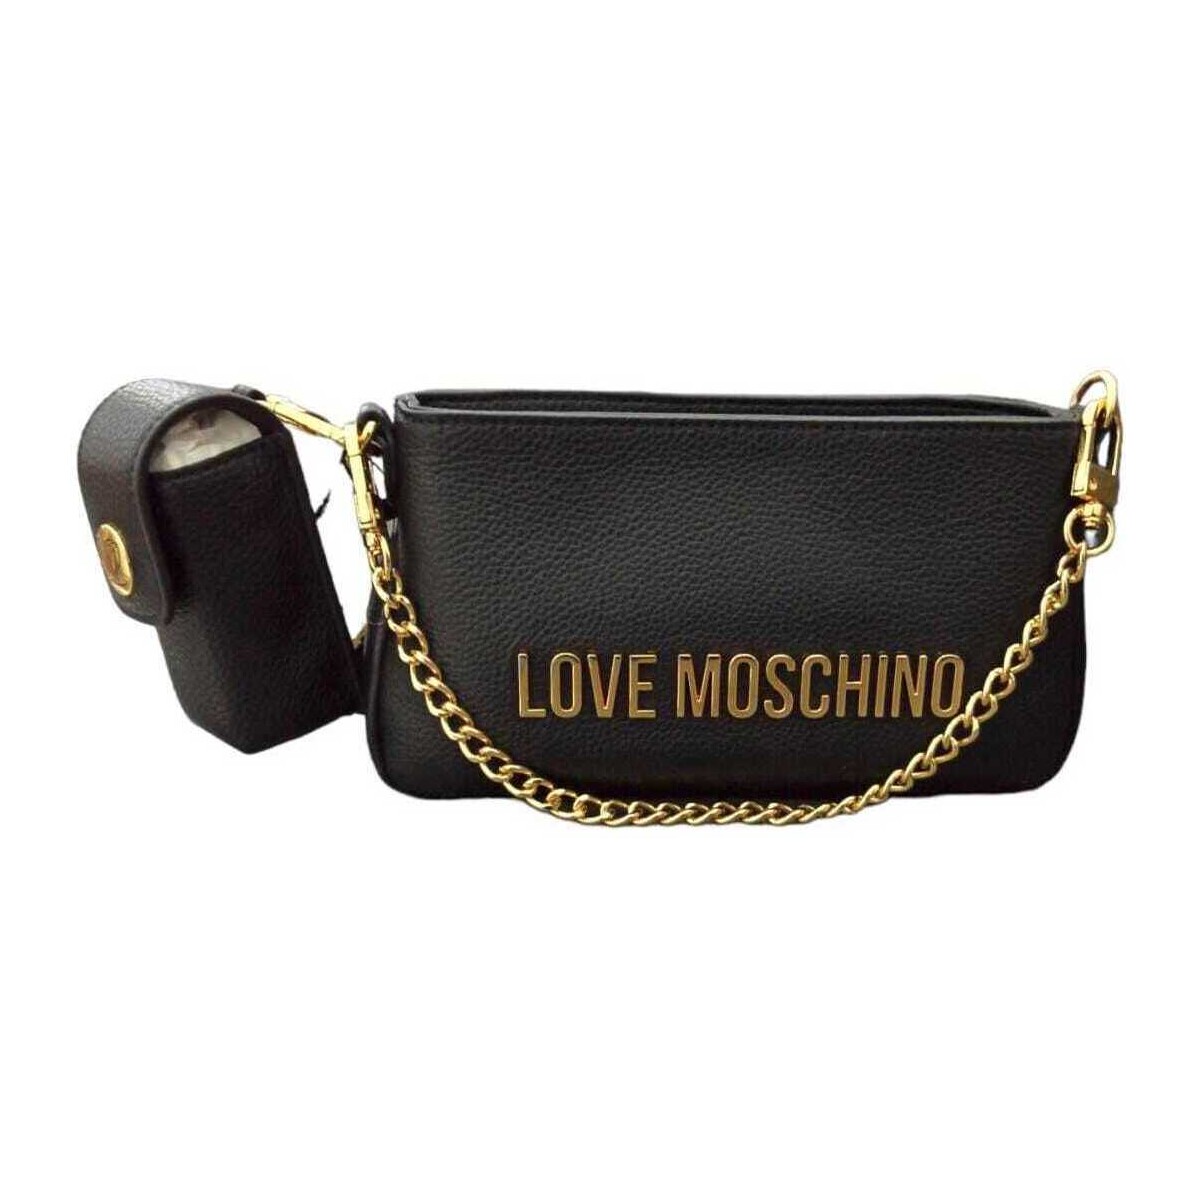 Taschen Damen Geldtasche / Handtasche Love Moschino  Schwarz